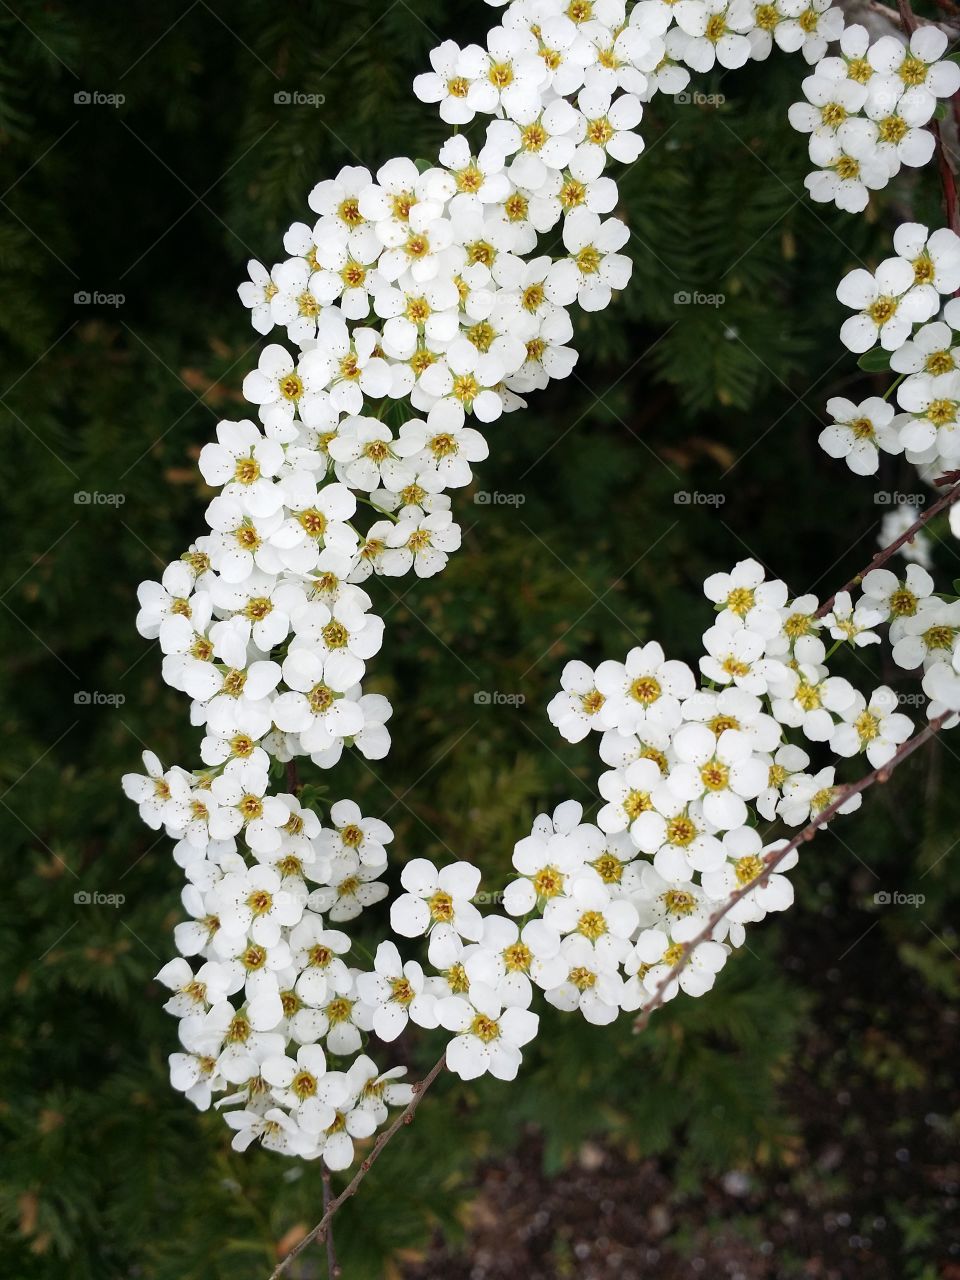 White - yellow flowers